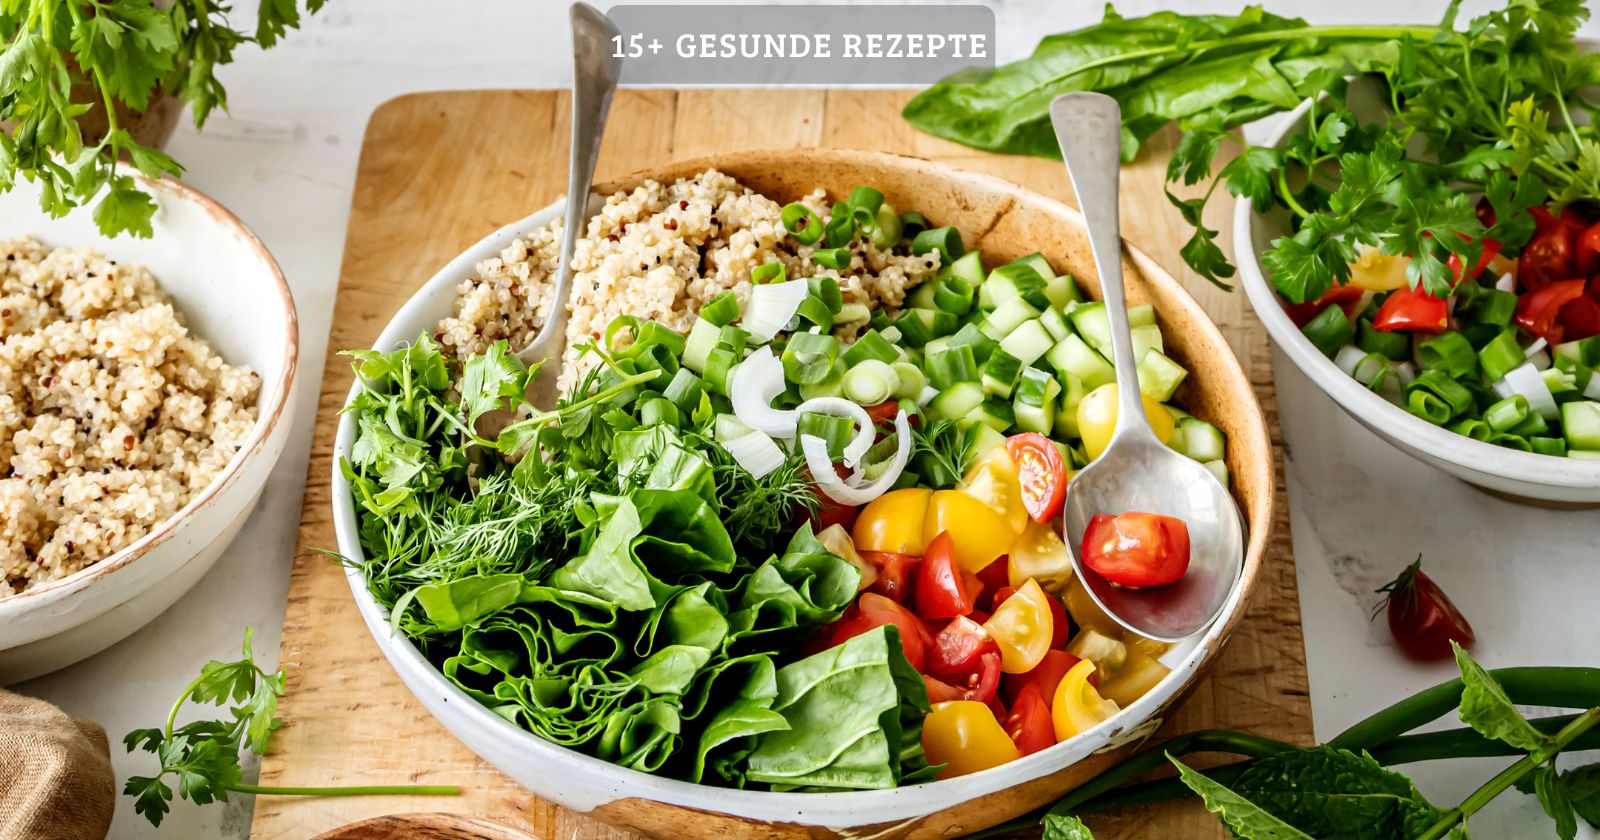 15+ gesunde rezepte, frische salat-bowl mit quinoa